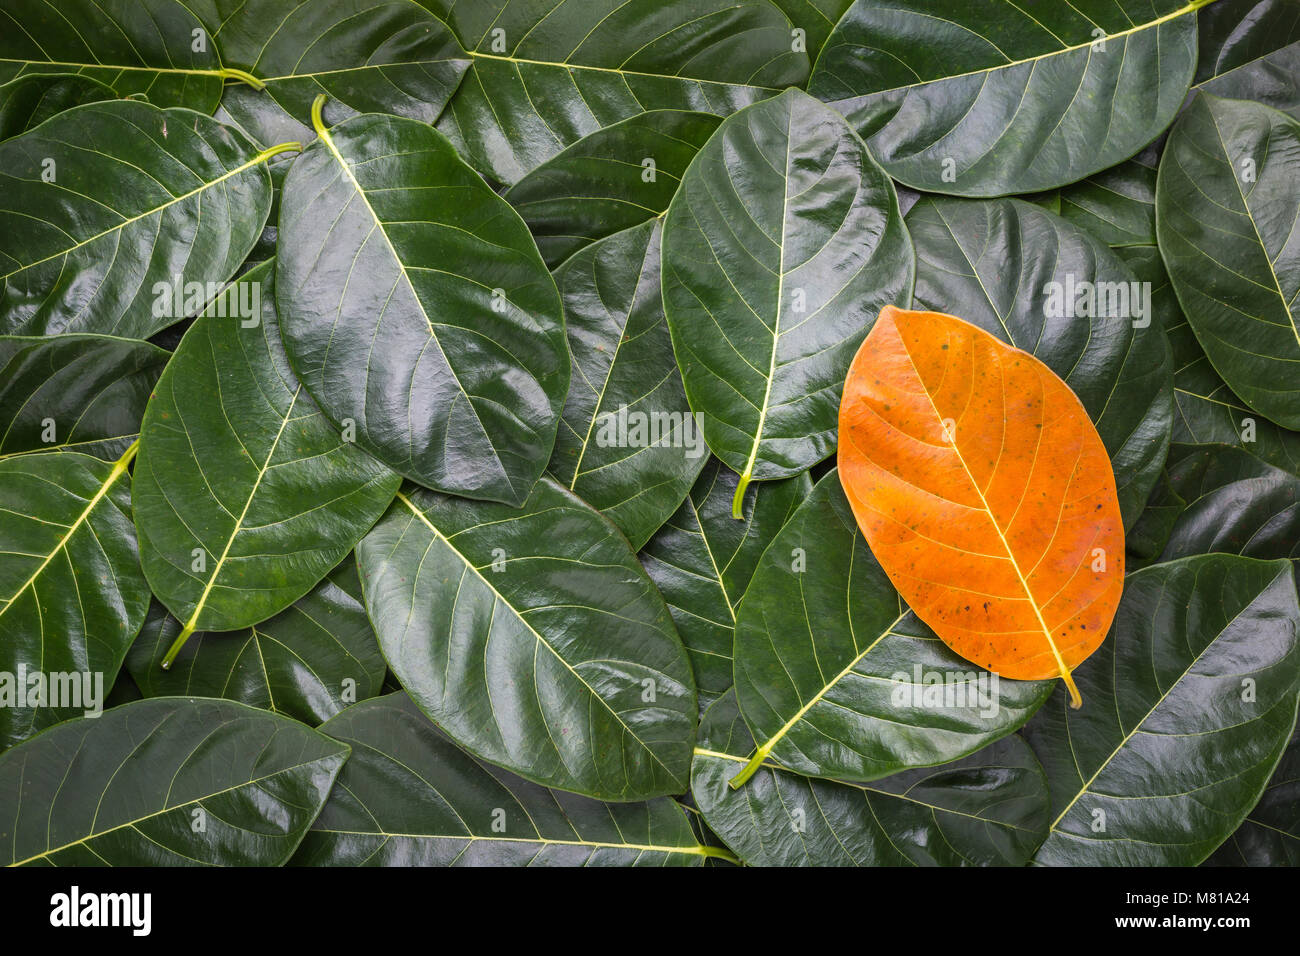 Stapel von Baum zu verlassen. Verschiedene Gelb lassen auf dunkelgrünen Blätter der jackfrucht Baum für Textur und Hintergrund verwenden. Für Umwelt geänderte Konzept. Stockfoto